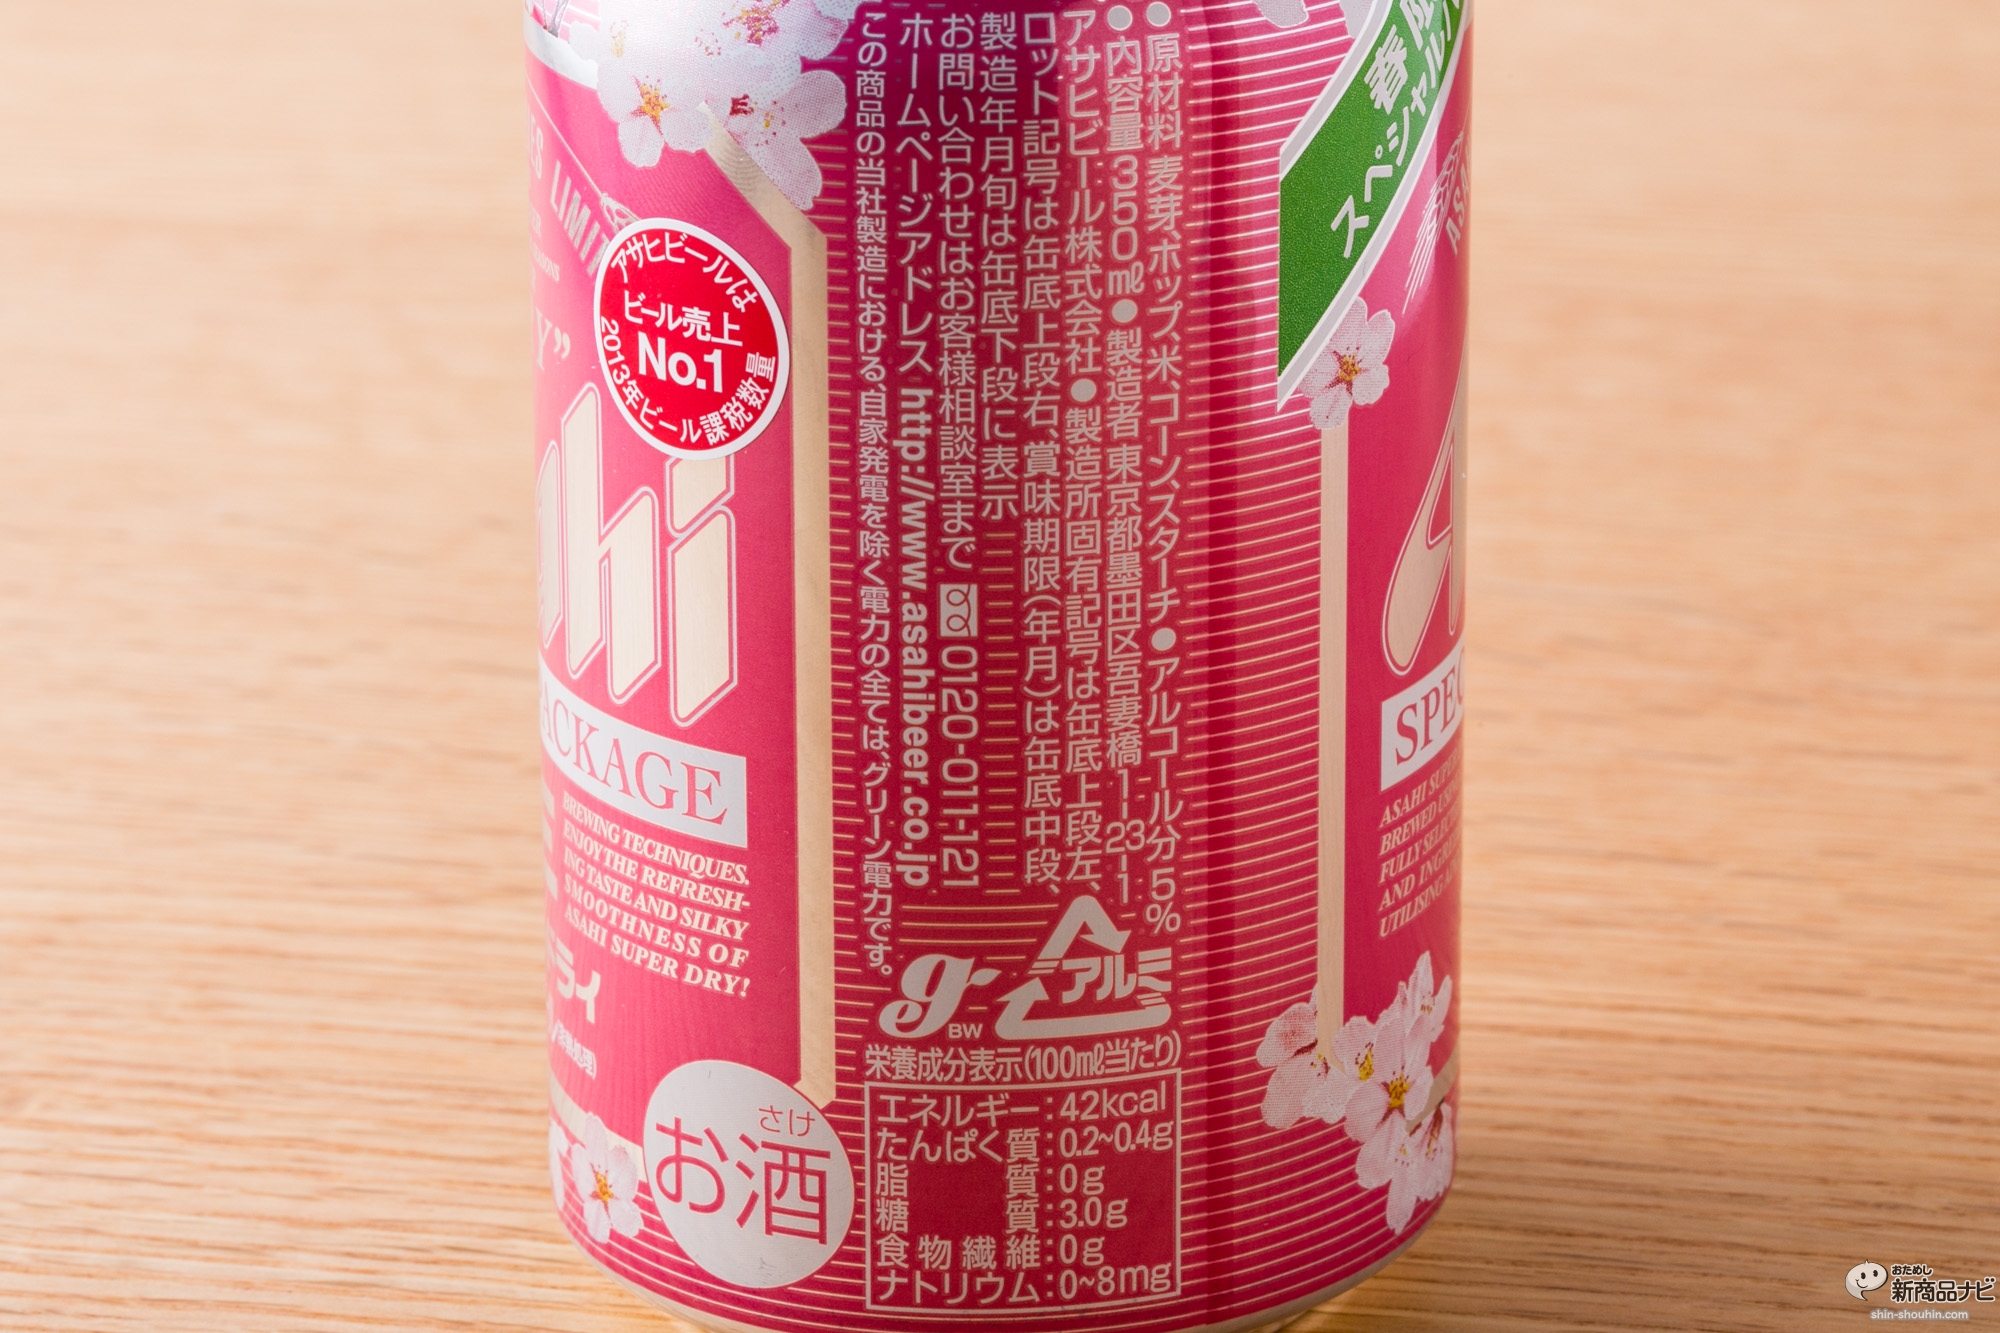 おためし新商品ナビ » Blog Archive » 『アサヒスーパードライ  スペシャルパッケージ』はビールの歴史を変えた「スーパードライ」の衣替え限定Ver.